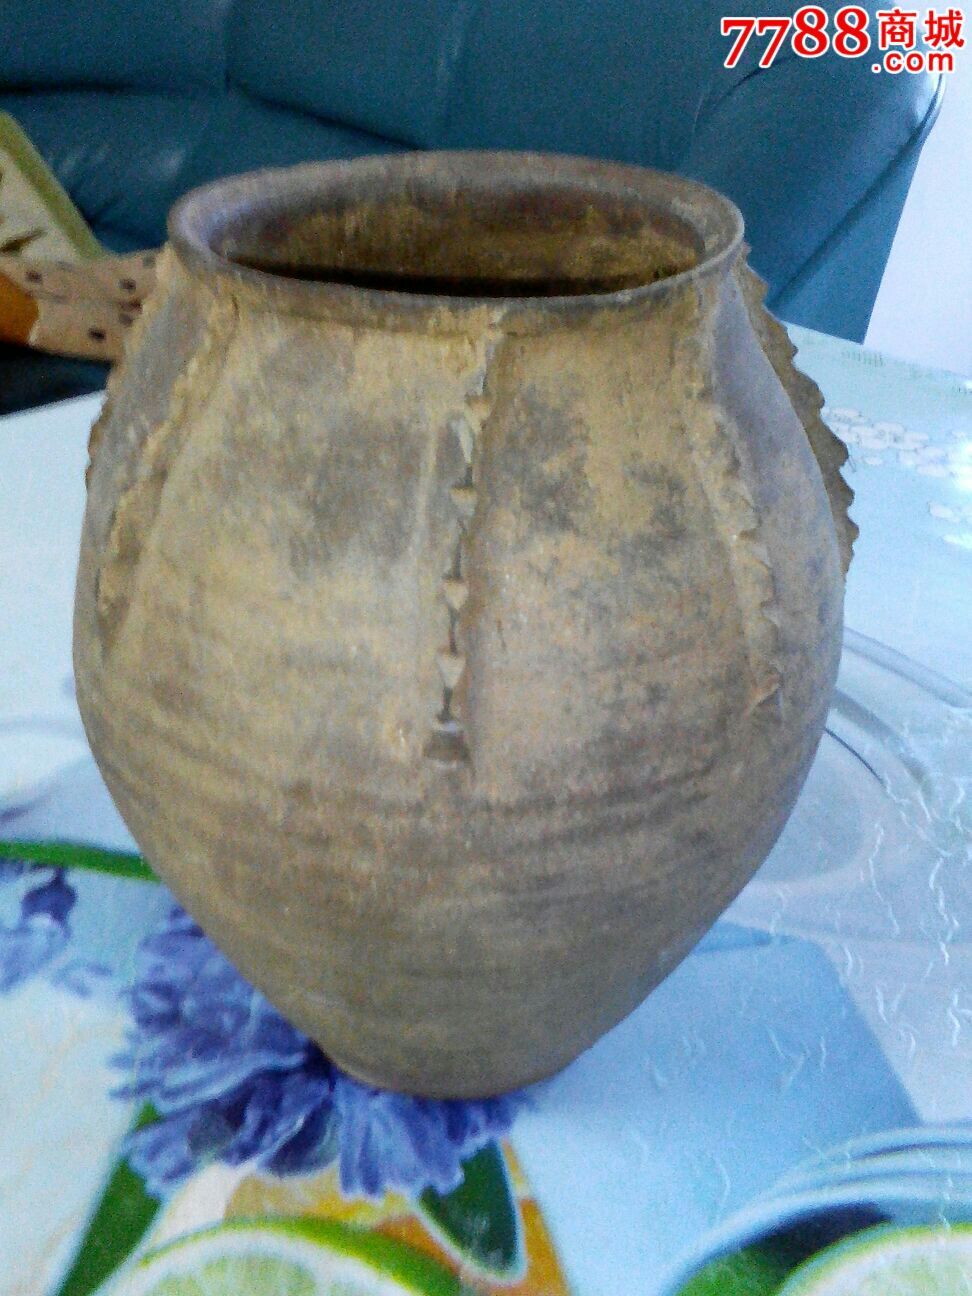 高古瓷:石器时代绳纹陶罐.